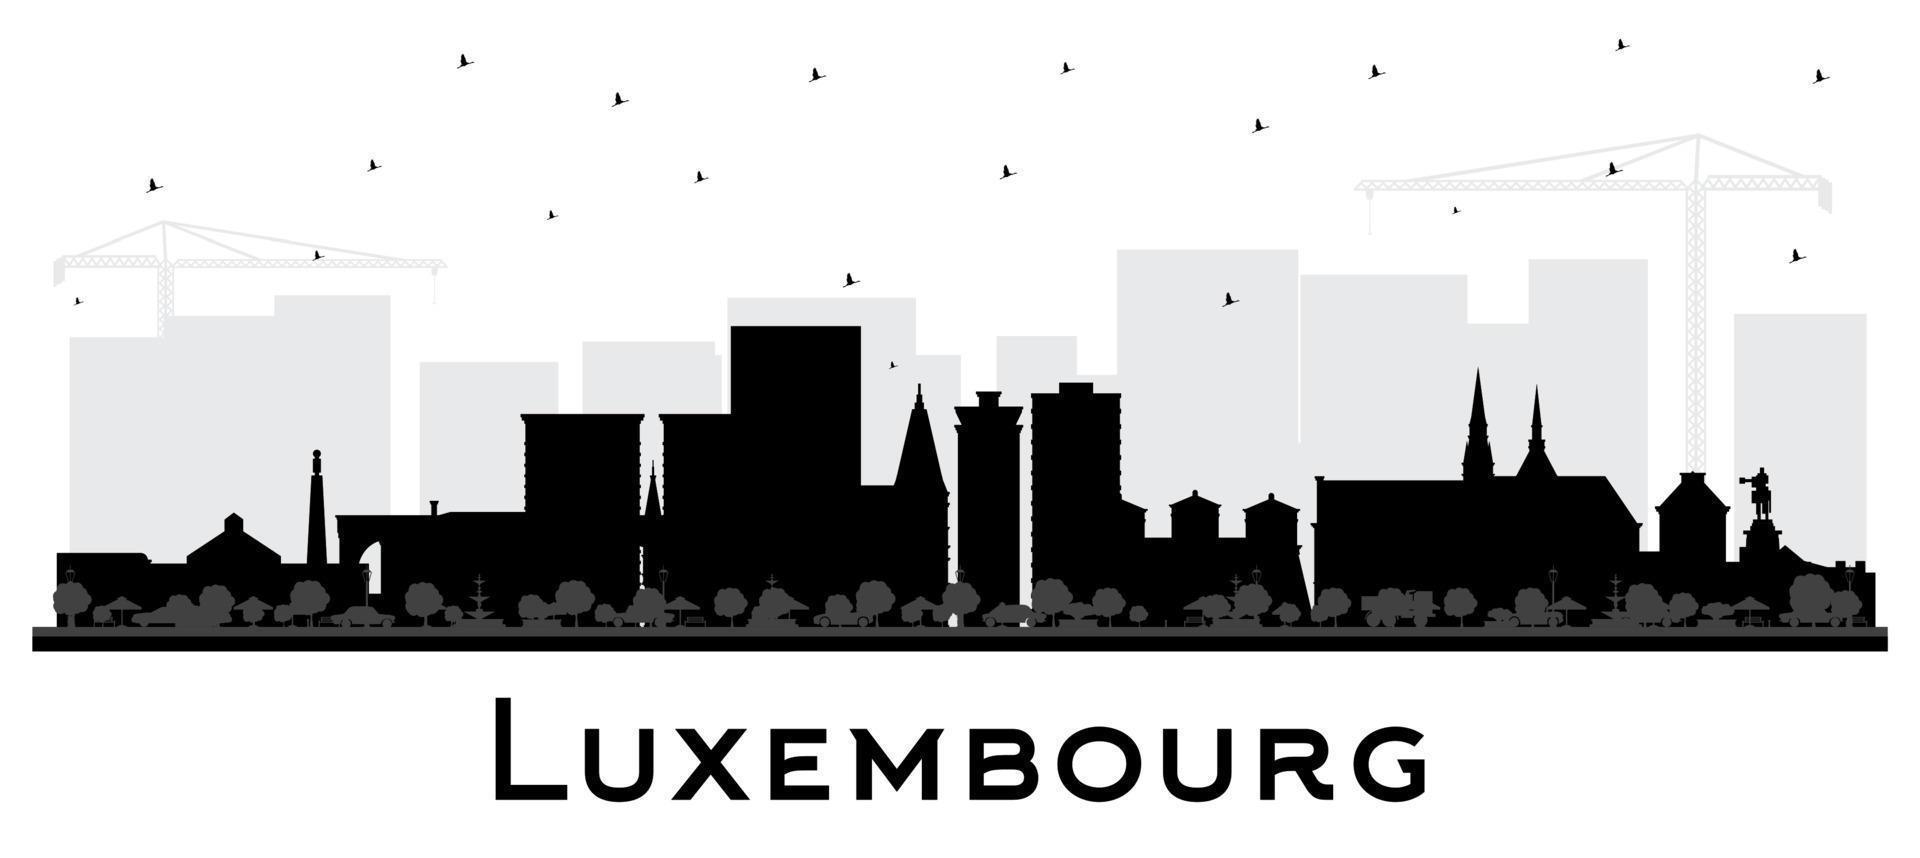 Luxemburg Stadt Horizont Silhouette mit schwarz Gebäude isoliert auf Weiß. Vektor Illustration. Luxemburg Stadtbild mit Sehenswürdigkeiten.